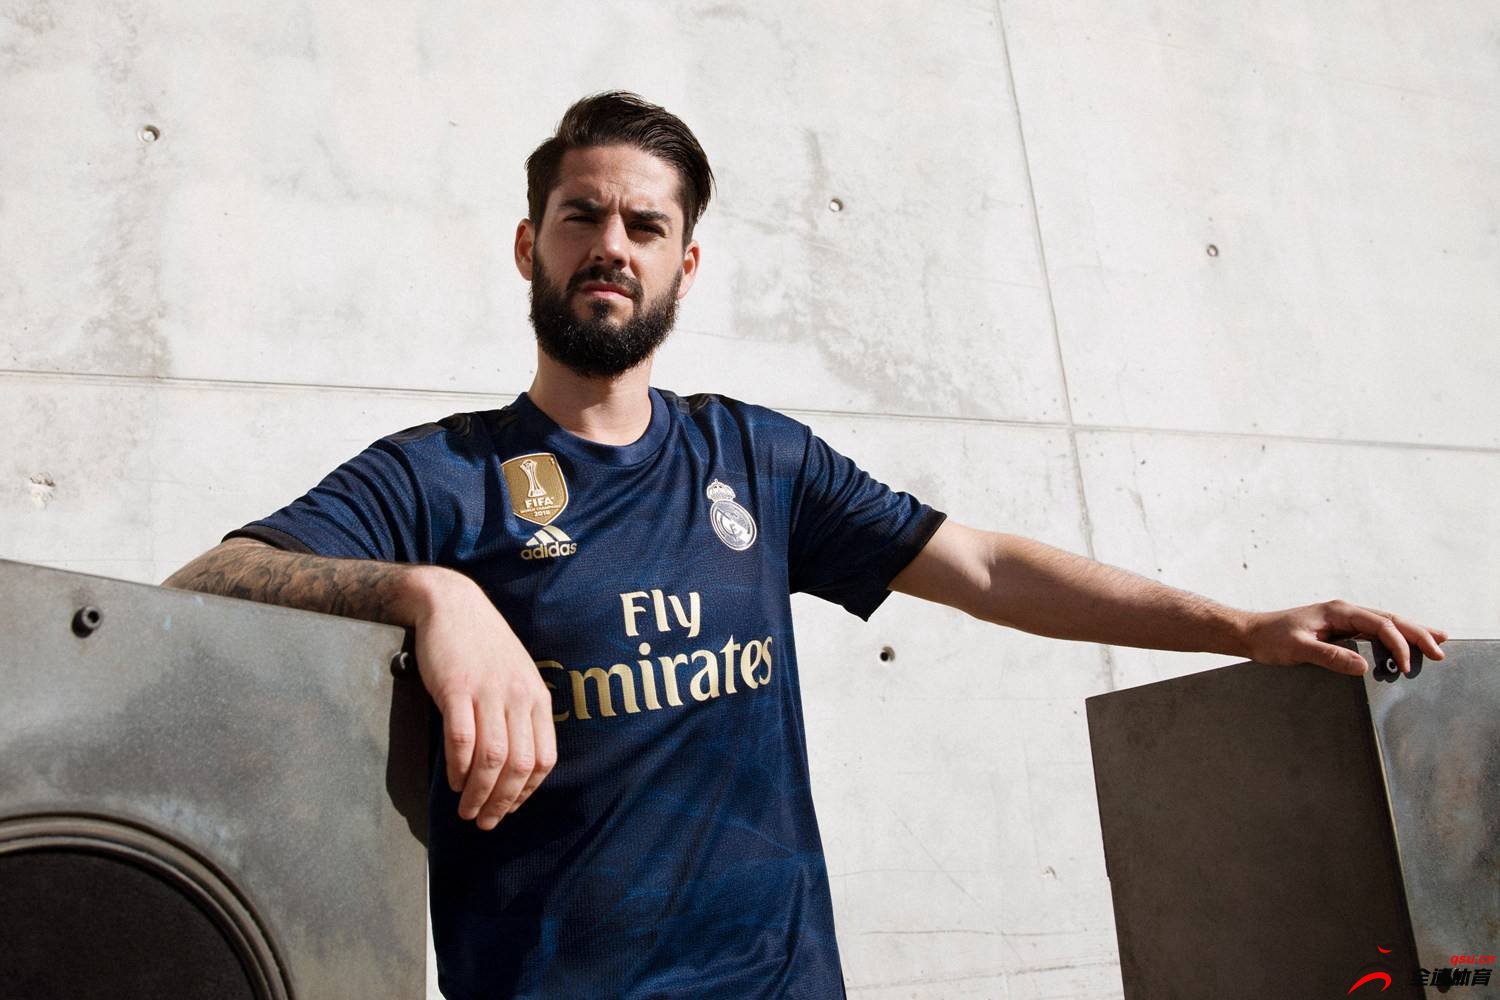 阿迪达斯发布了皇家马德里2019/20赛季的客场球衣